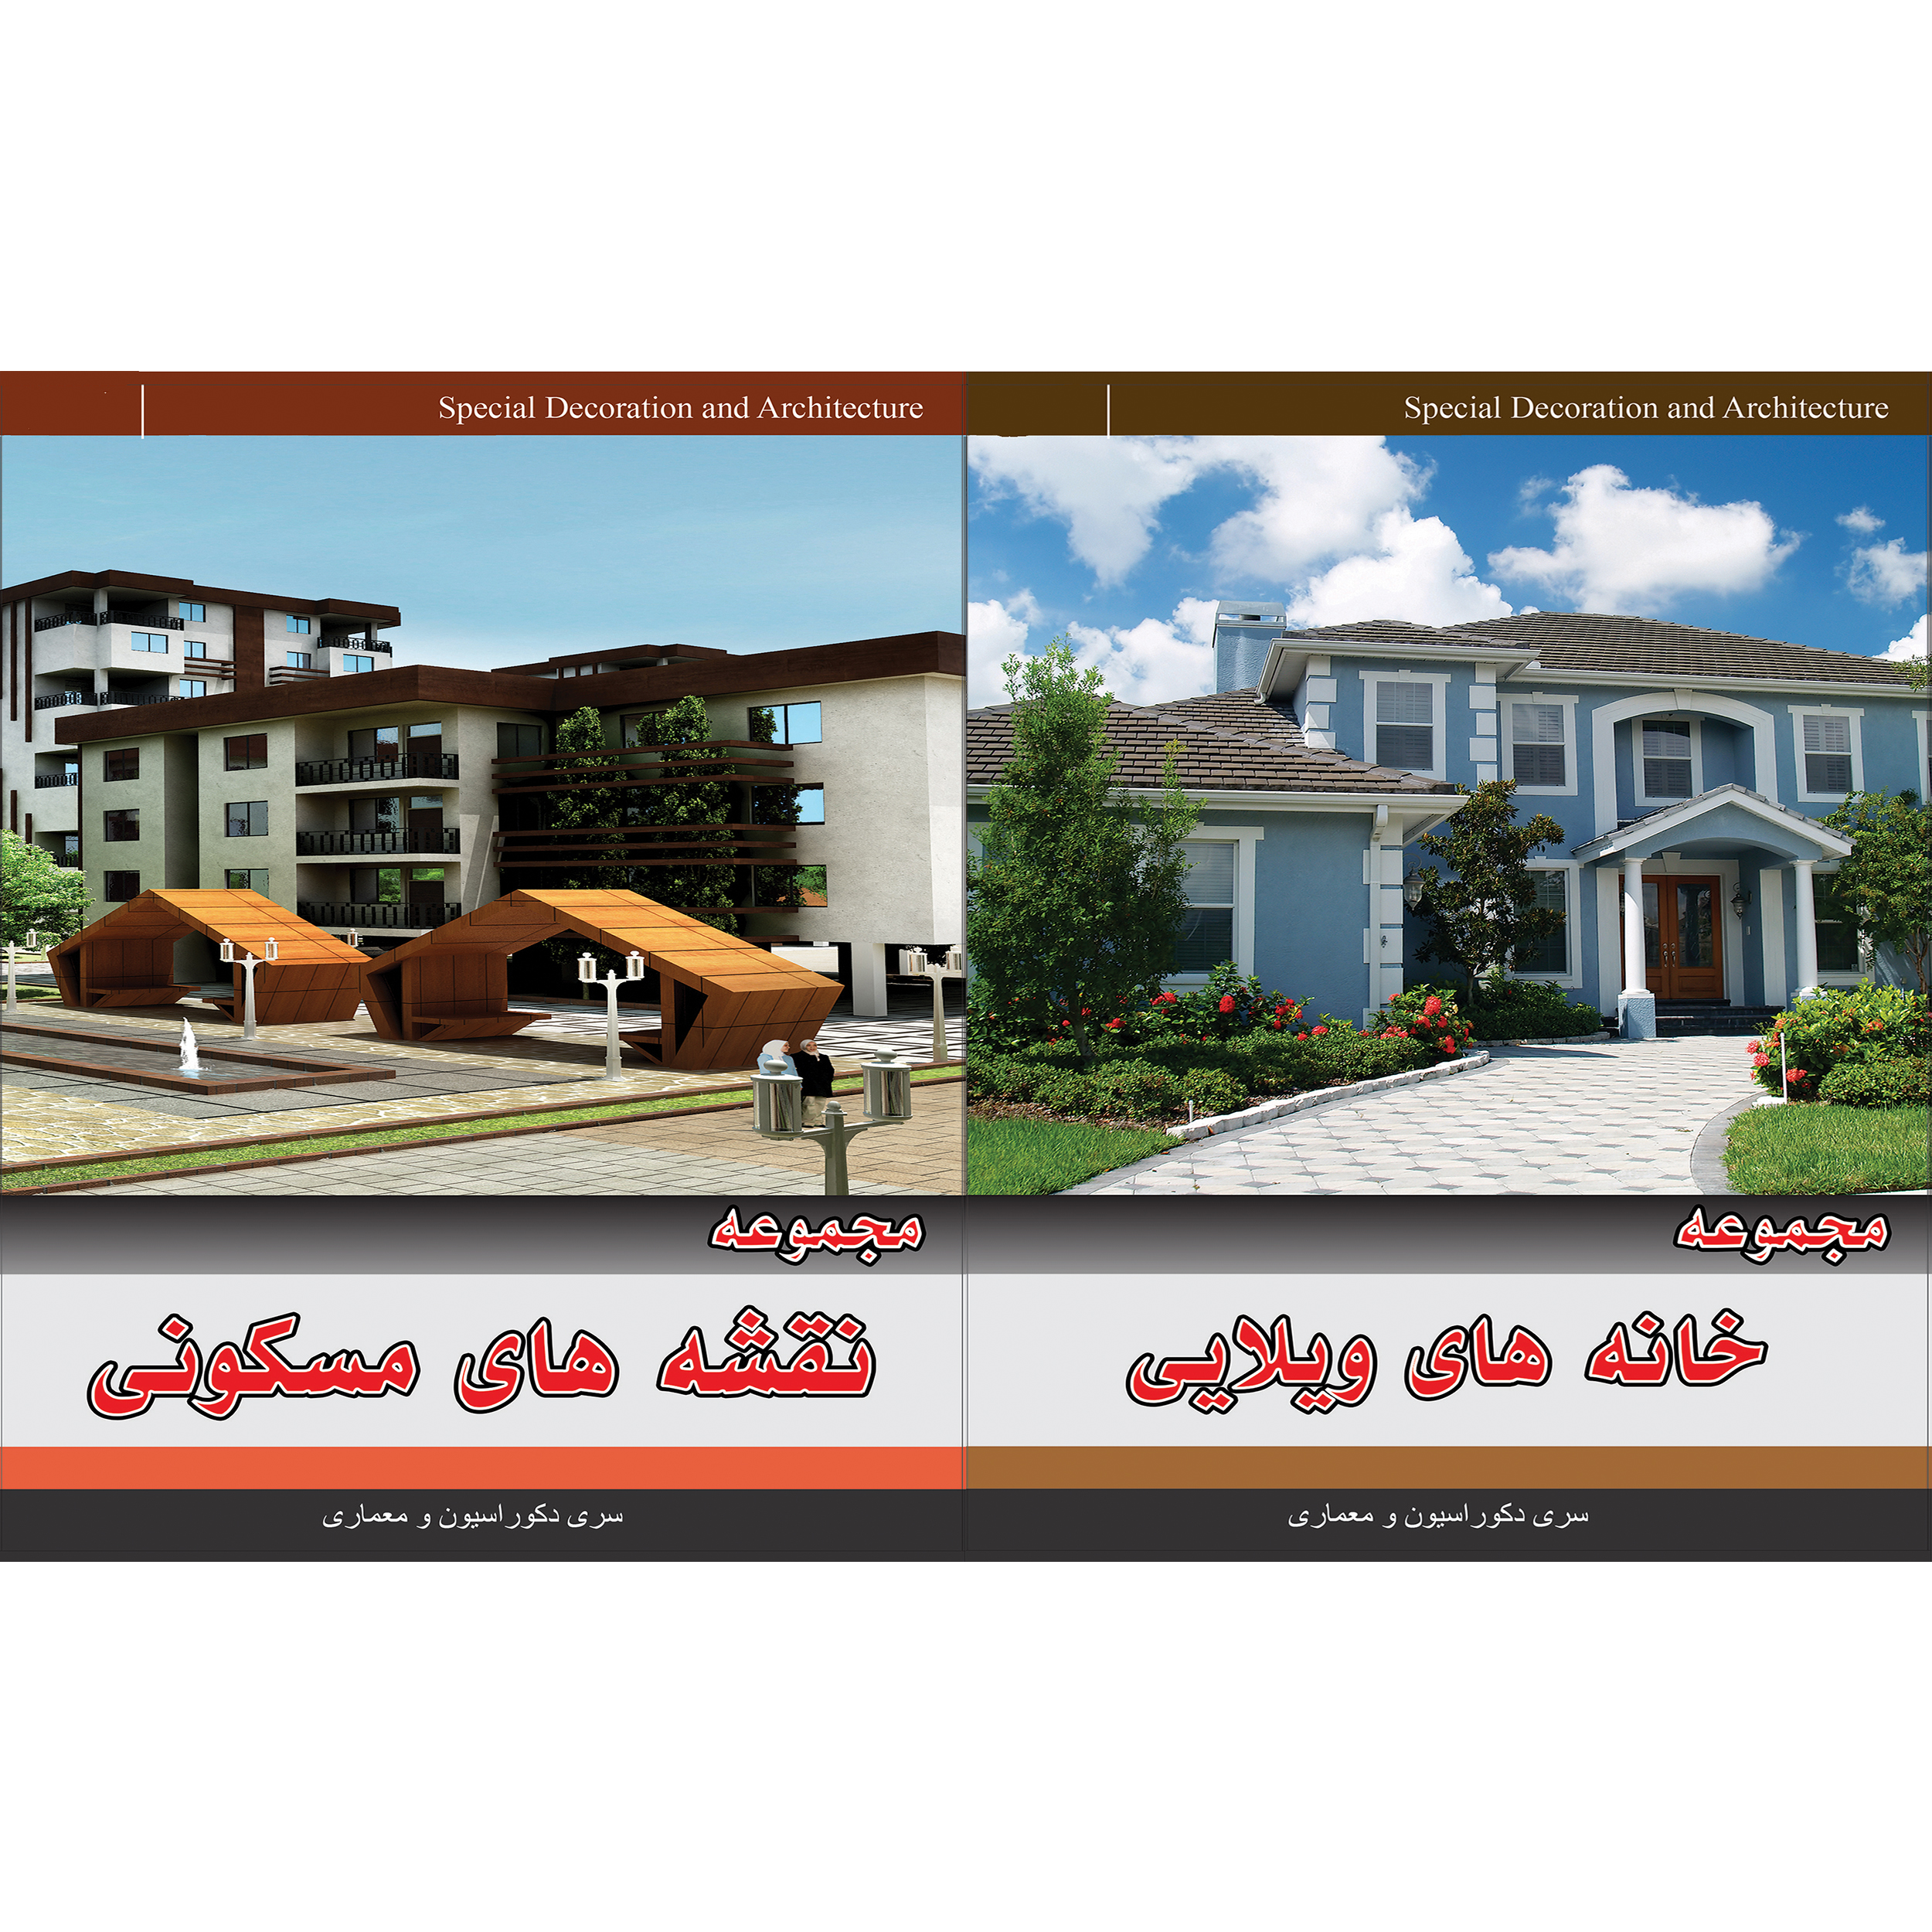 مجموعه تصاویر خانه های ویلایی نشر جی ای بانک به همراه مجموعه نقشه های مسکونی نشر جی ای بانک